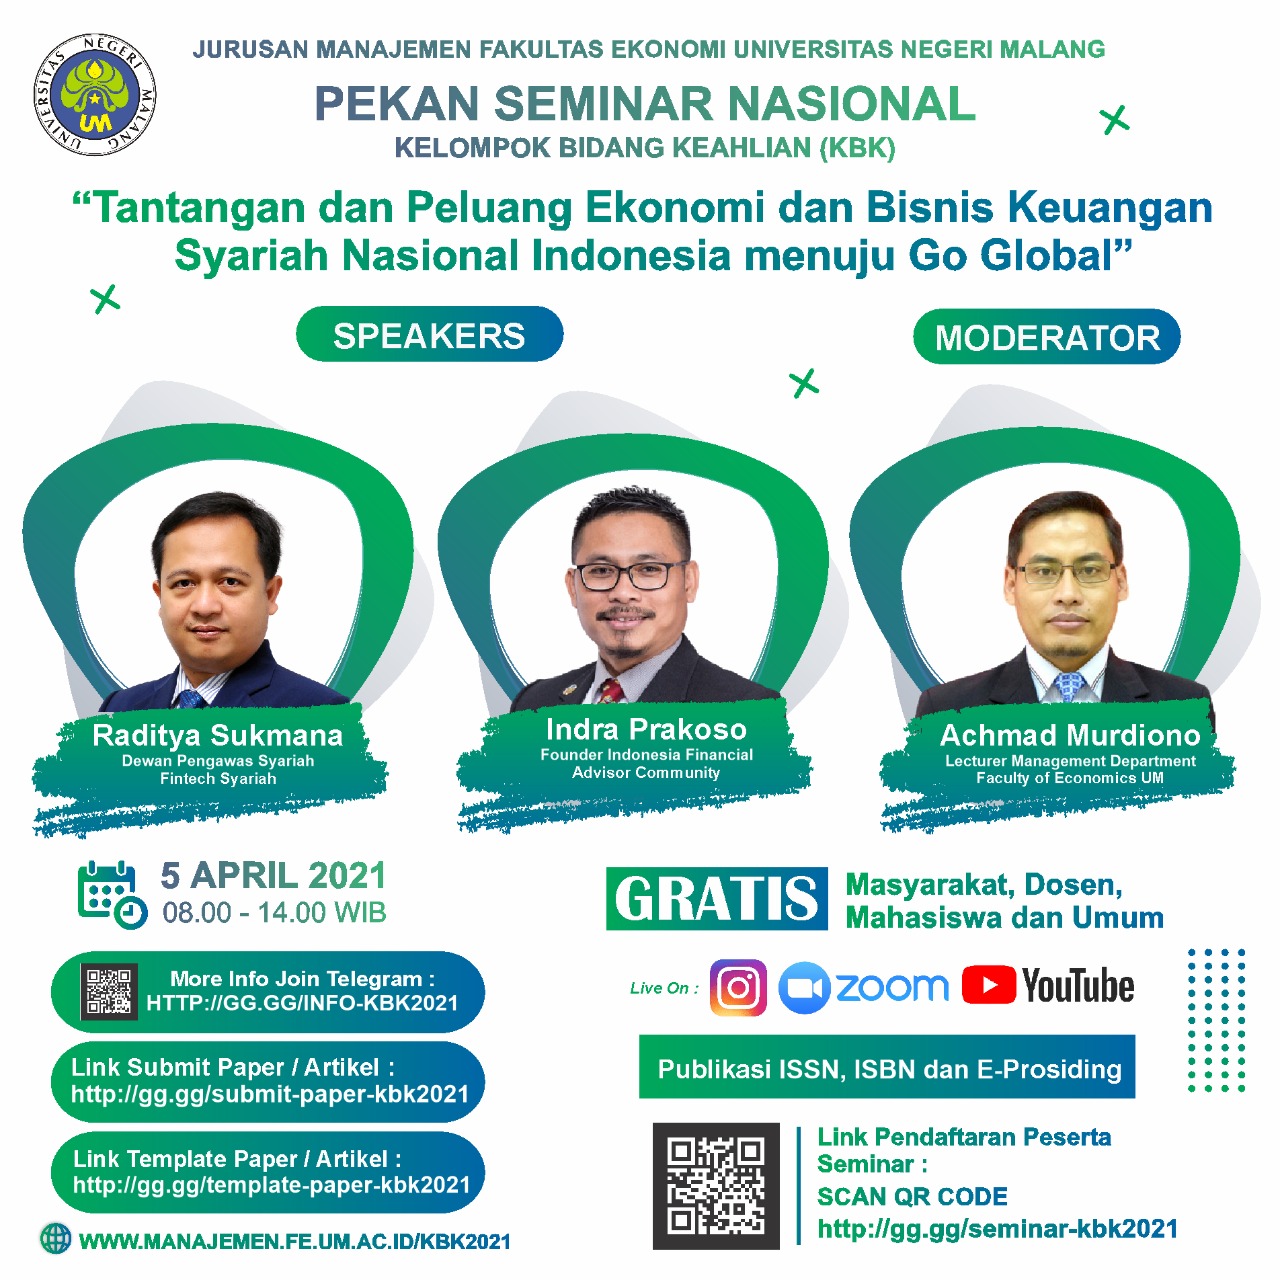 Seminar Nasional KBK Tantangan dan Peluang Ekonomi dan Bisnis Keuangan Syariah nasional Indonesia Menuju Go Global Senin 5 April 2021